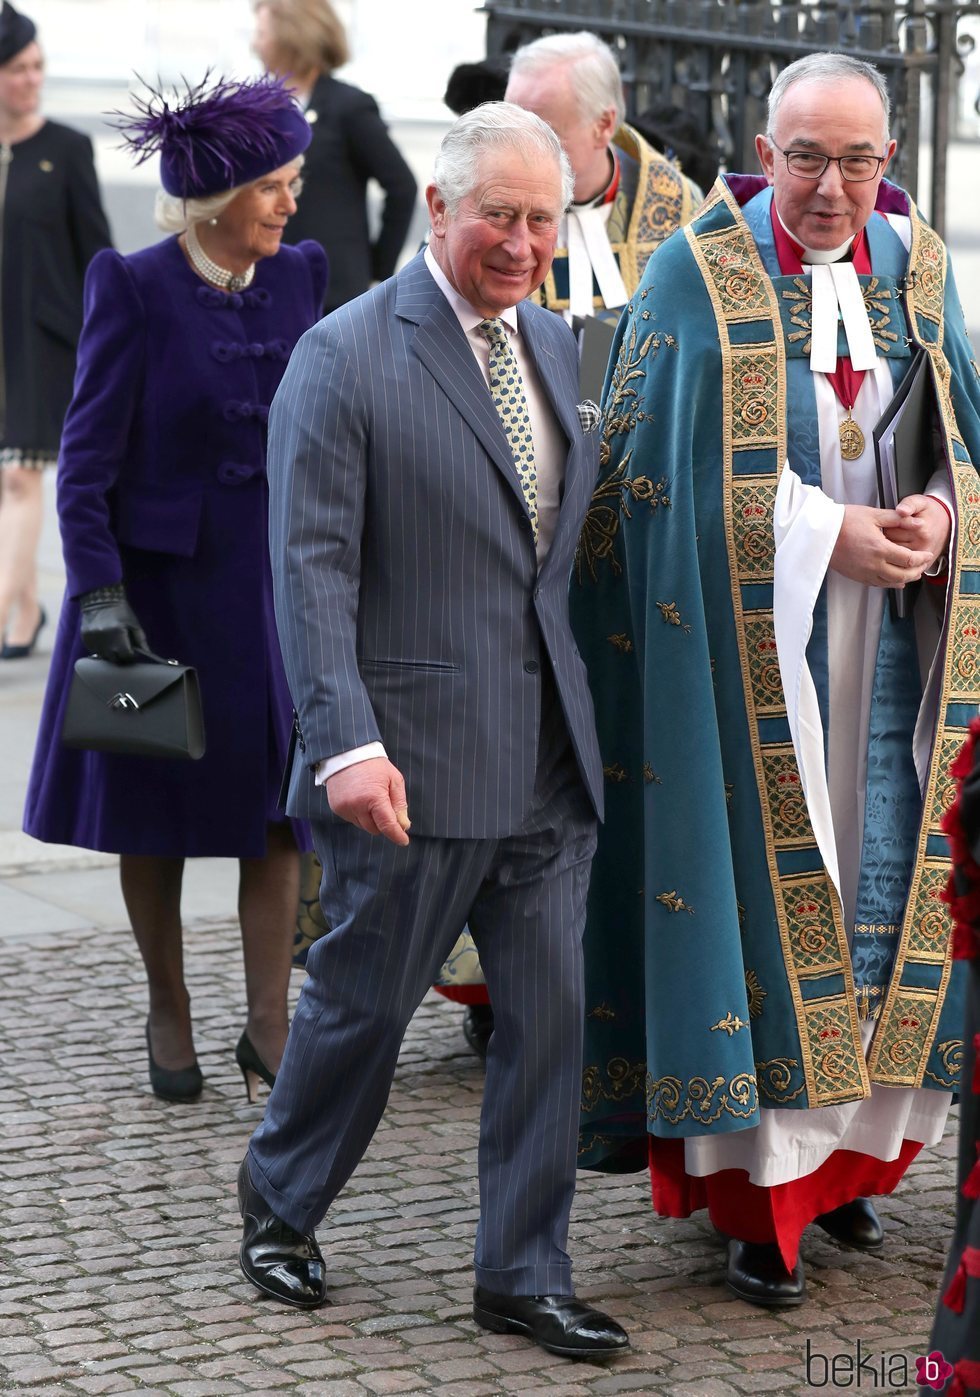 El Príncipe Carlos y Camilla Parker en el Día de la Commonwealth 2019